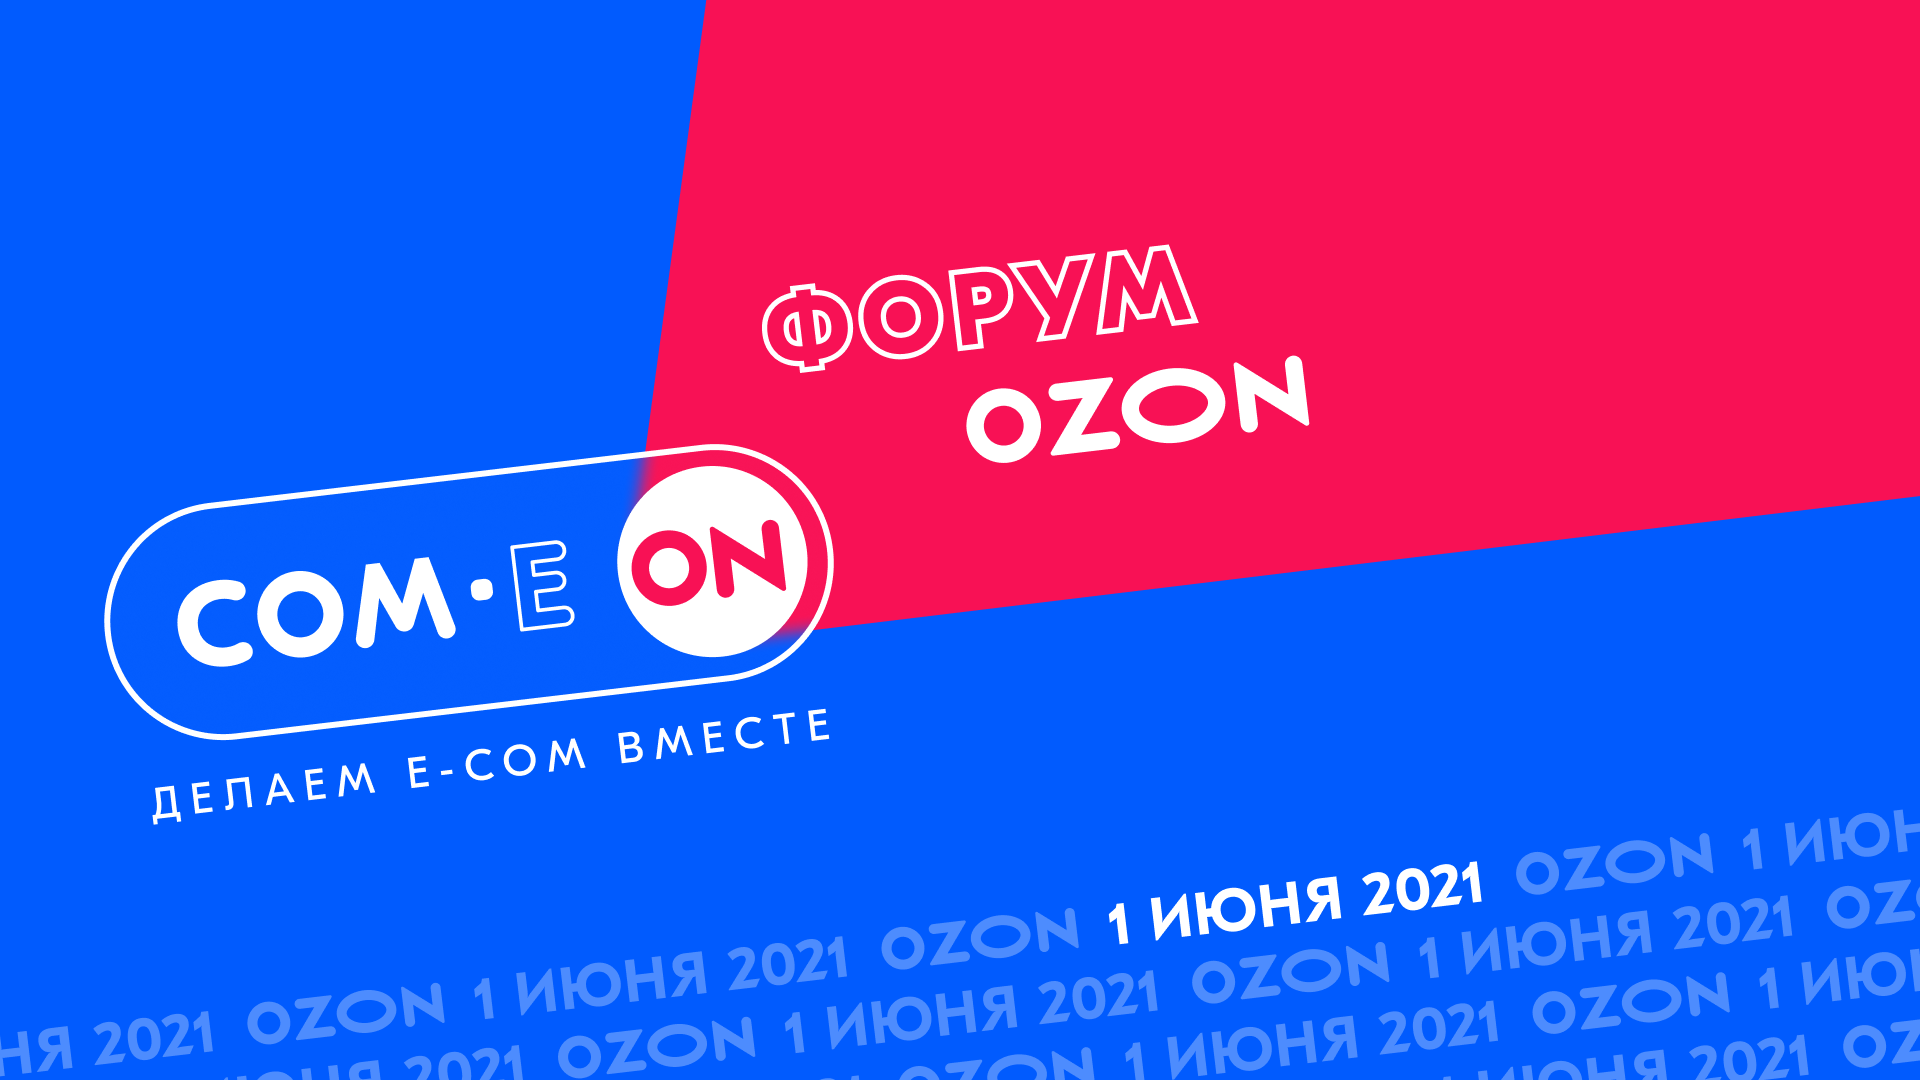 Forum com 1. OZON. OZON конференция. Маркетплейсы Озон. Озон мероприятие.